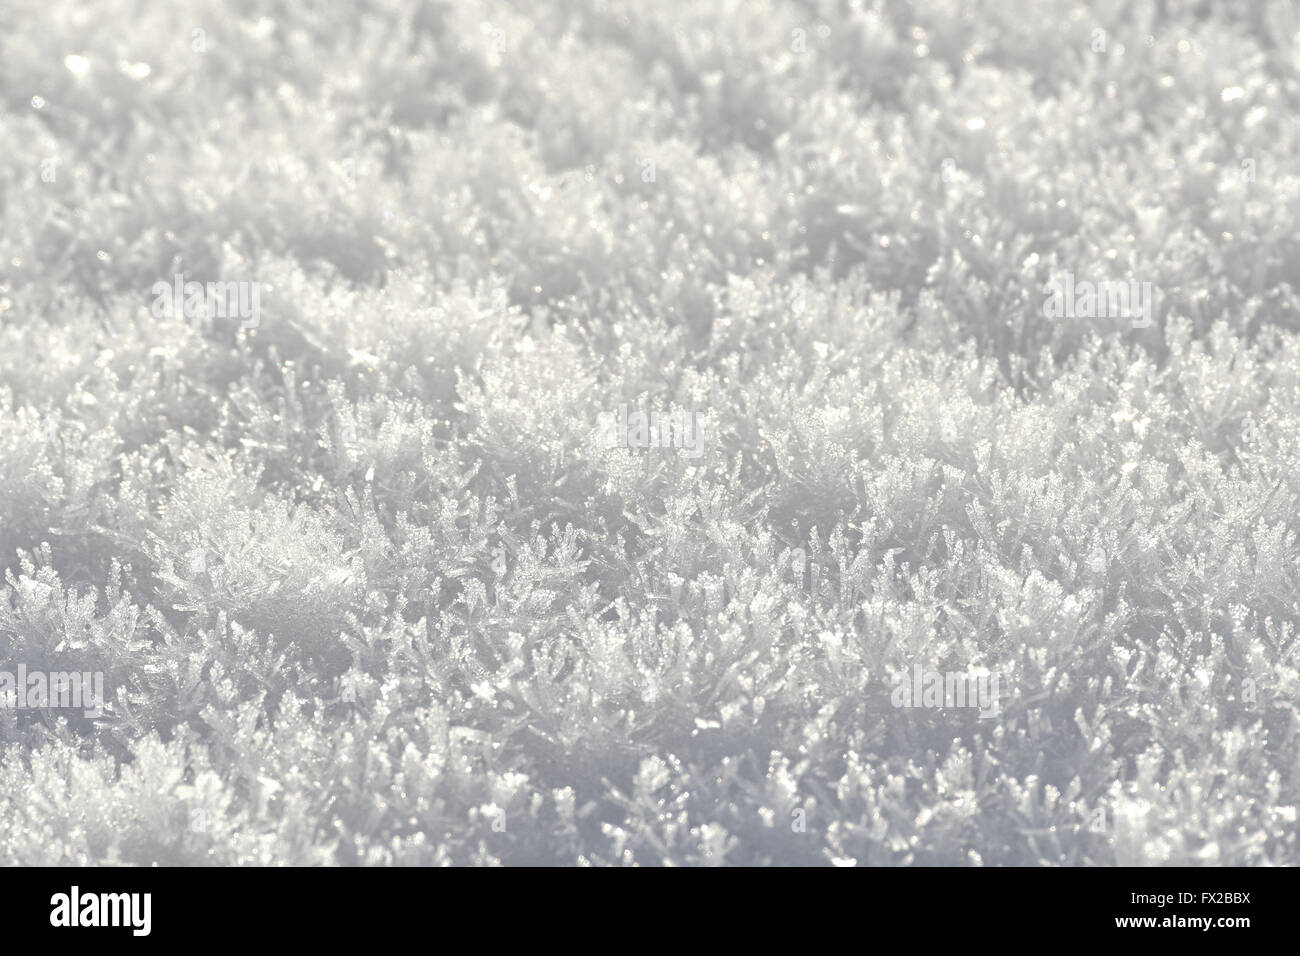 Cristales de nieve en el suelo con alto contraste de sombras Foto de stock